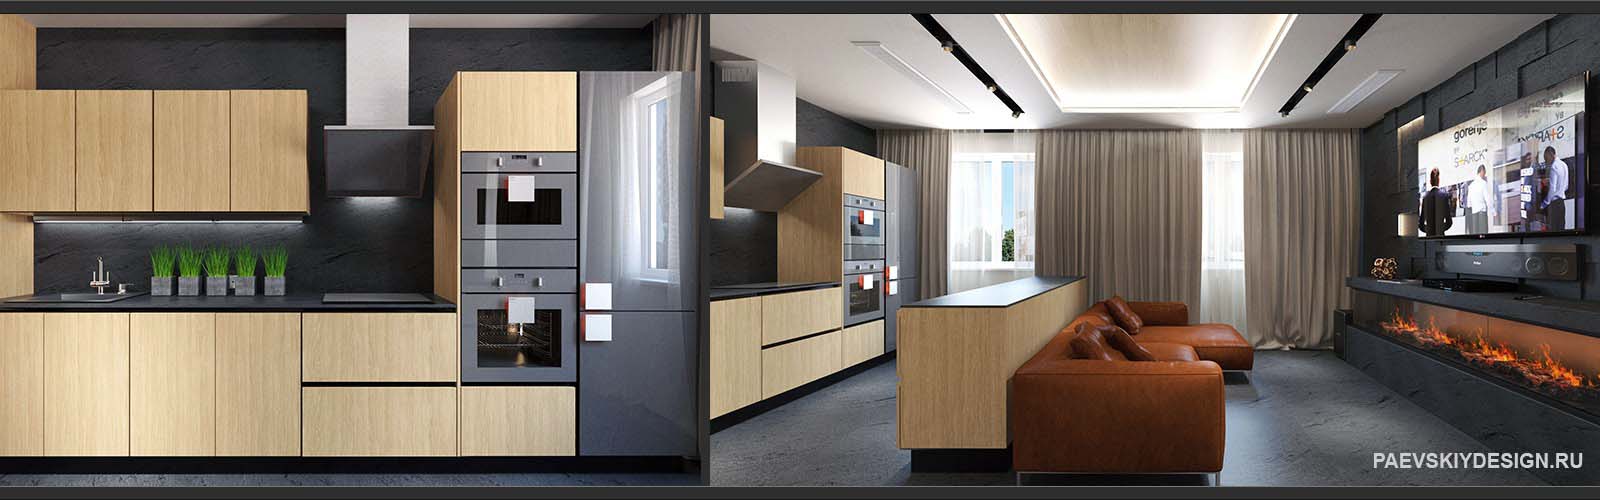 Дизайн проект кухни гостиной 30 кв м с деревянными фасадами